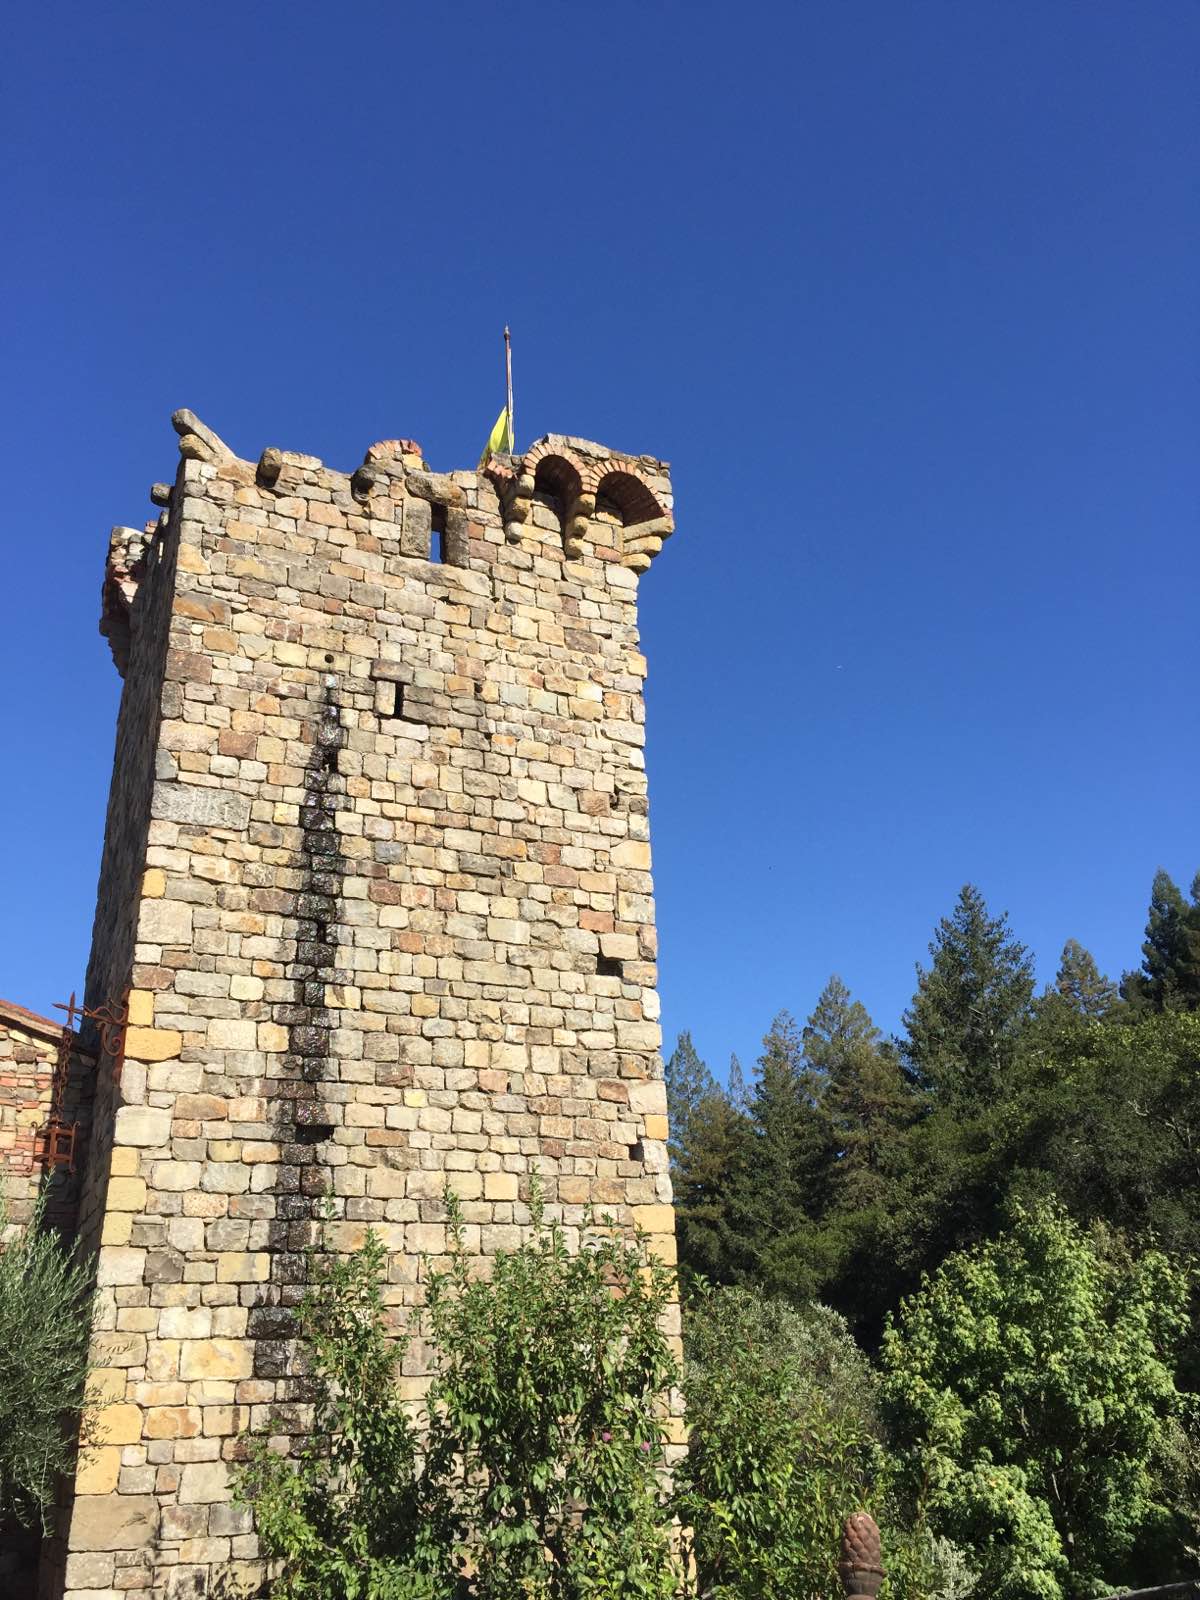 位於纳帕谷Calistoga市南端的丘陵之上有一座城堡“Castell